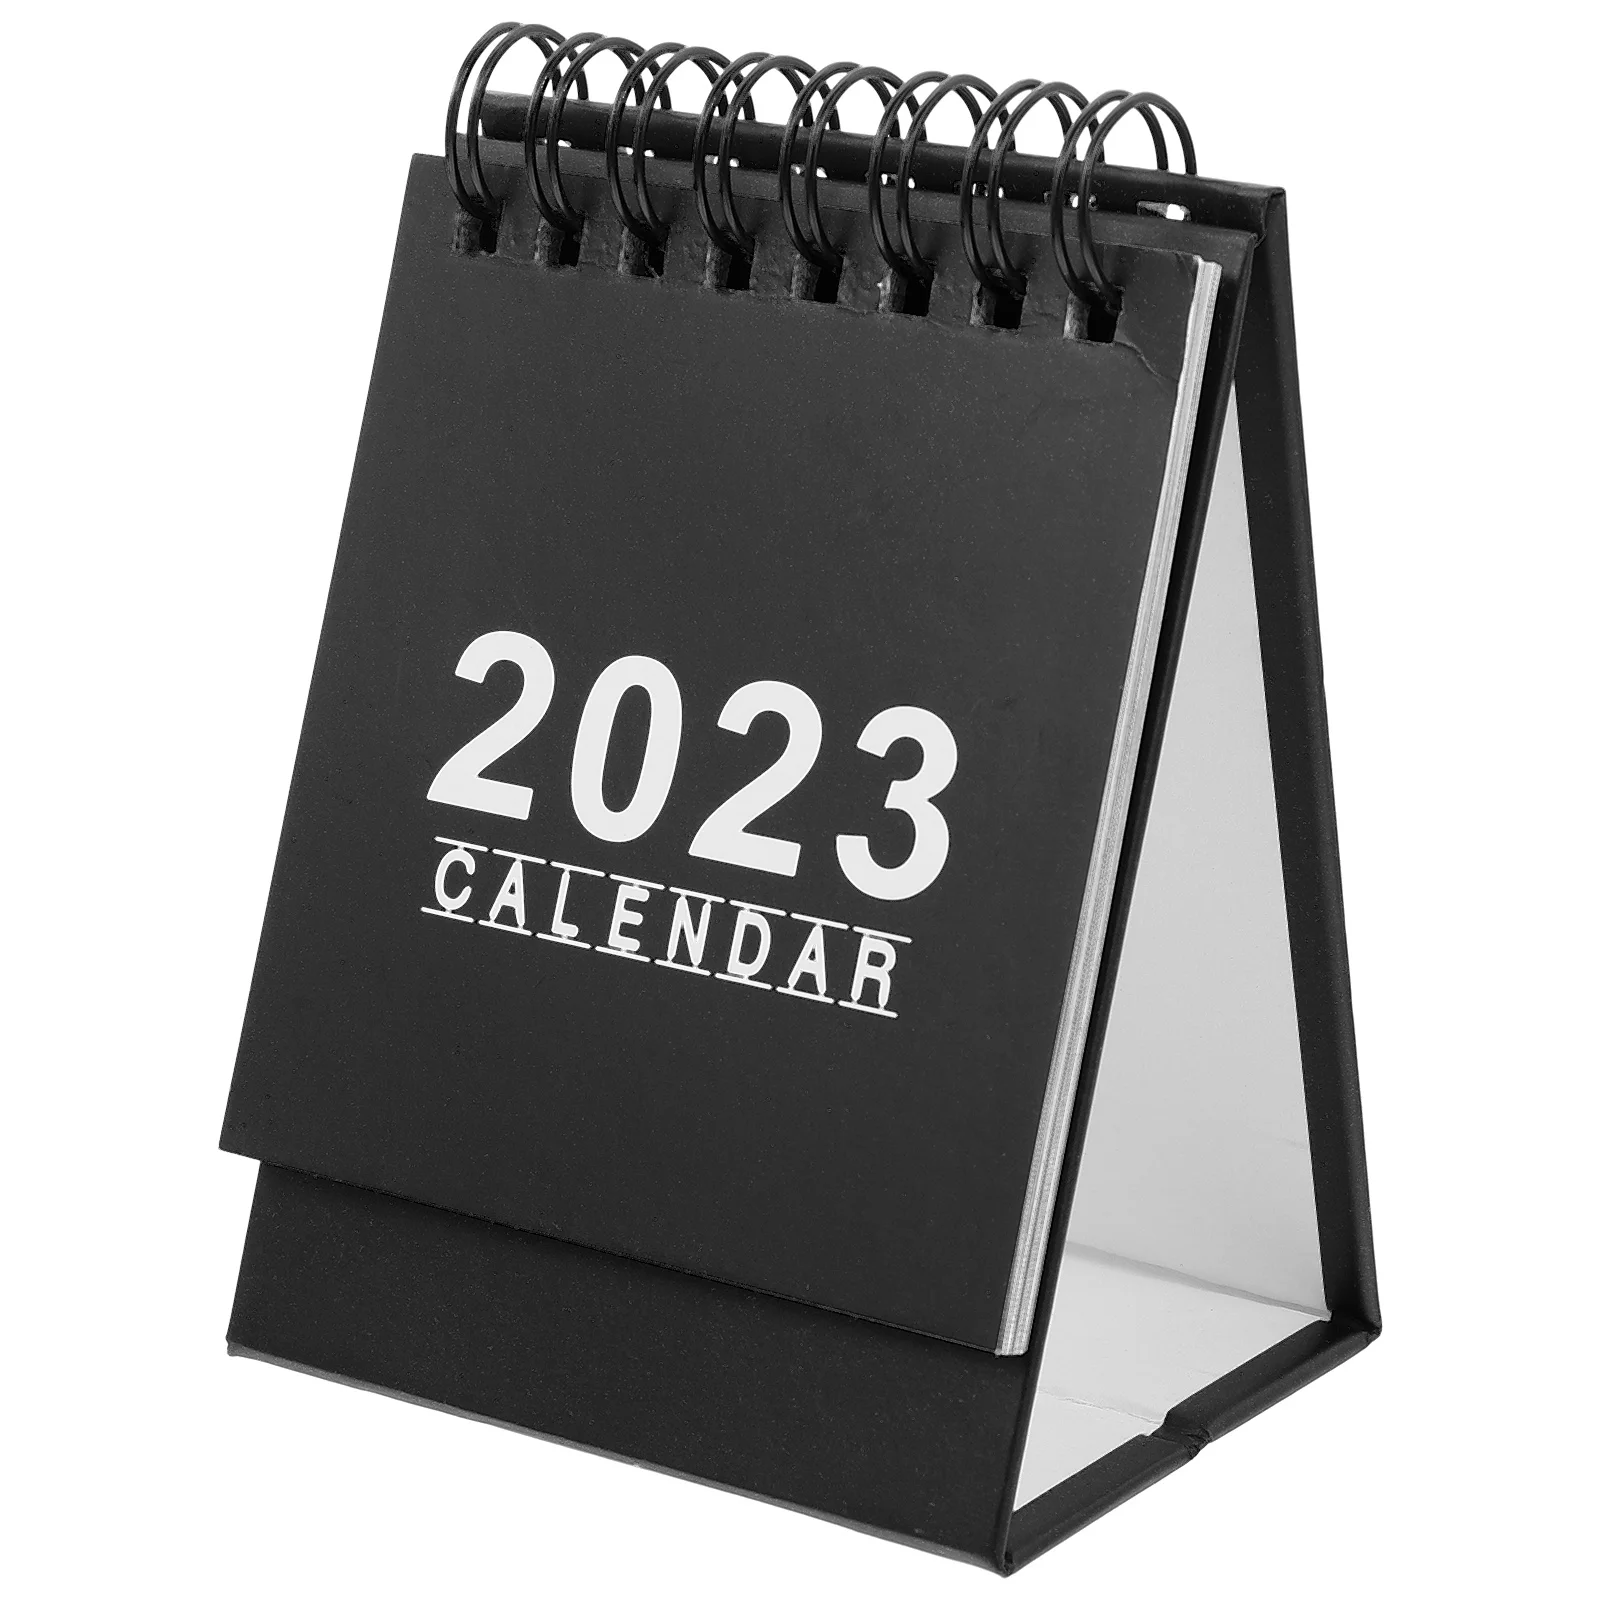 Календарь для настольного компьютера, ежедневный календарь, 2023